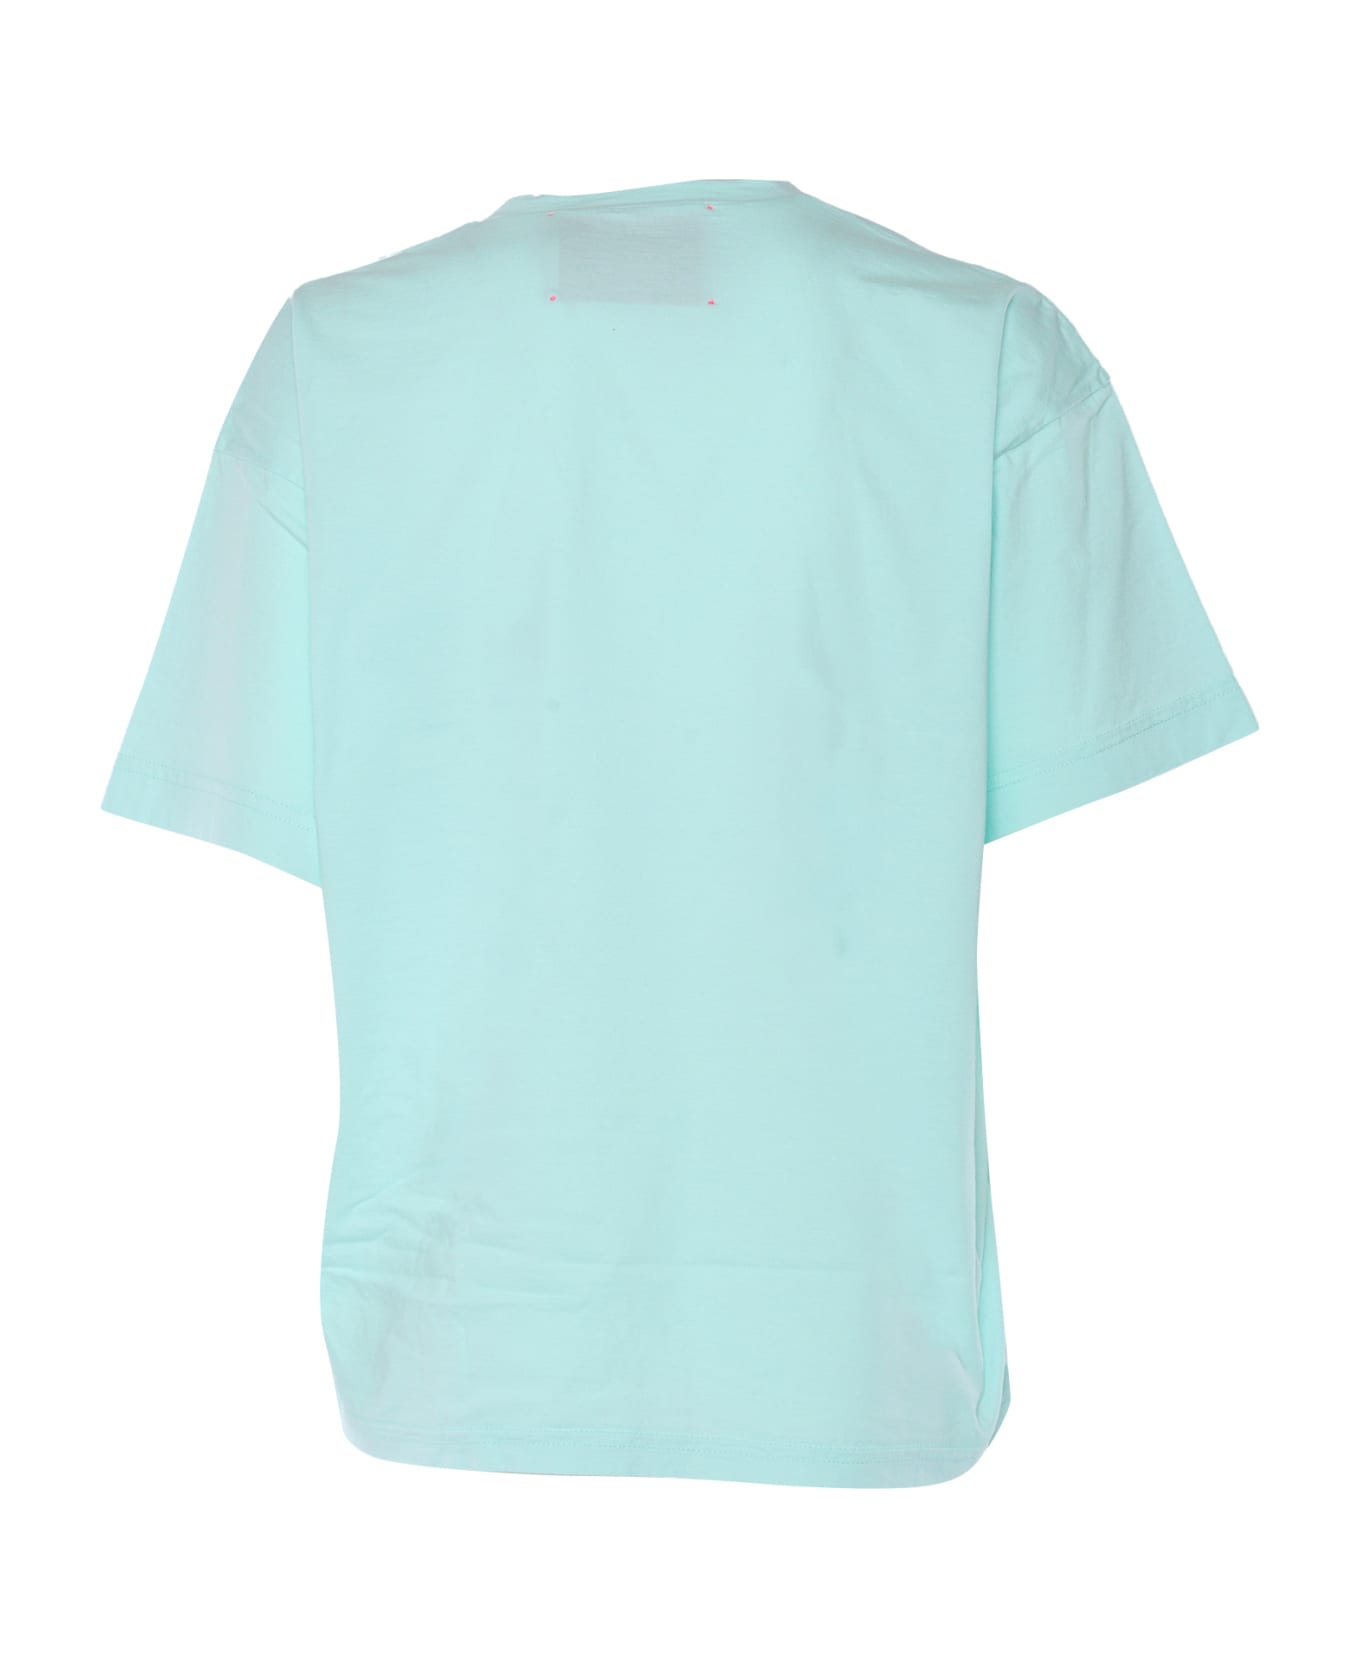 Forte_Forte Light Blue T-shirt - LIGHT BLUE Tシャツ